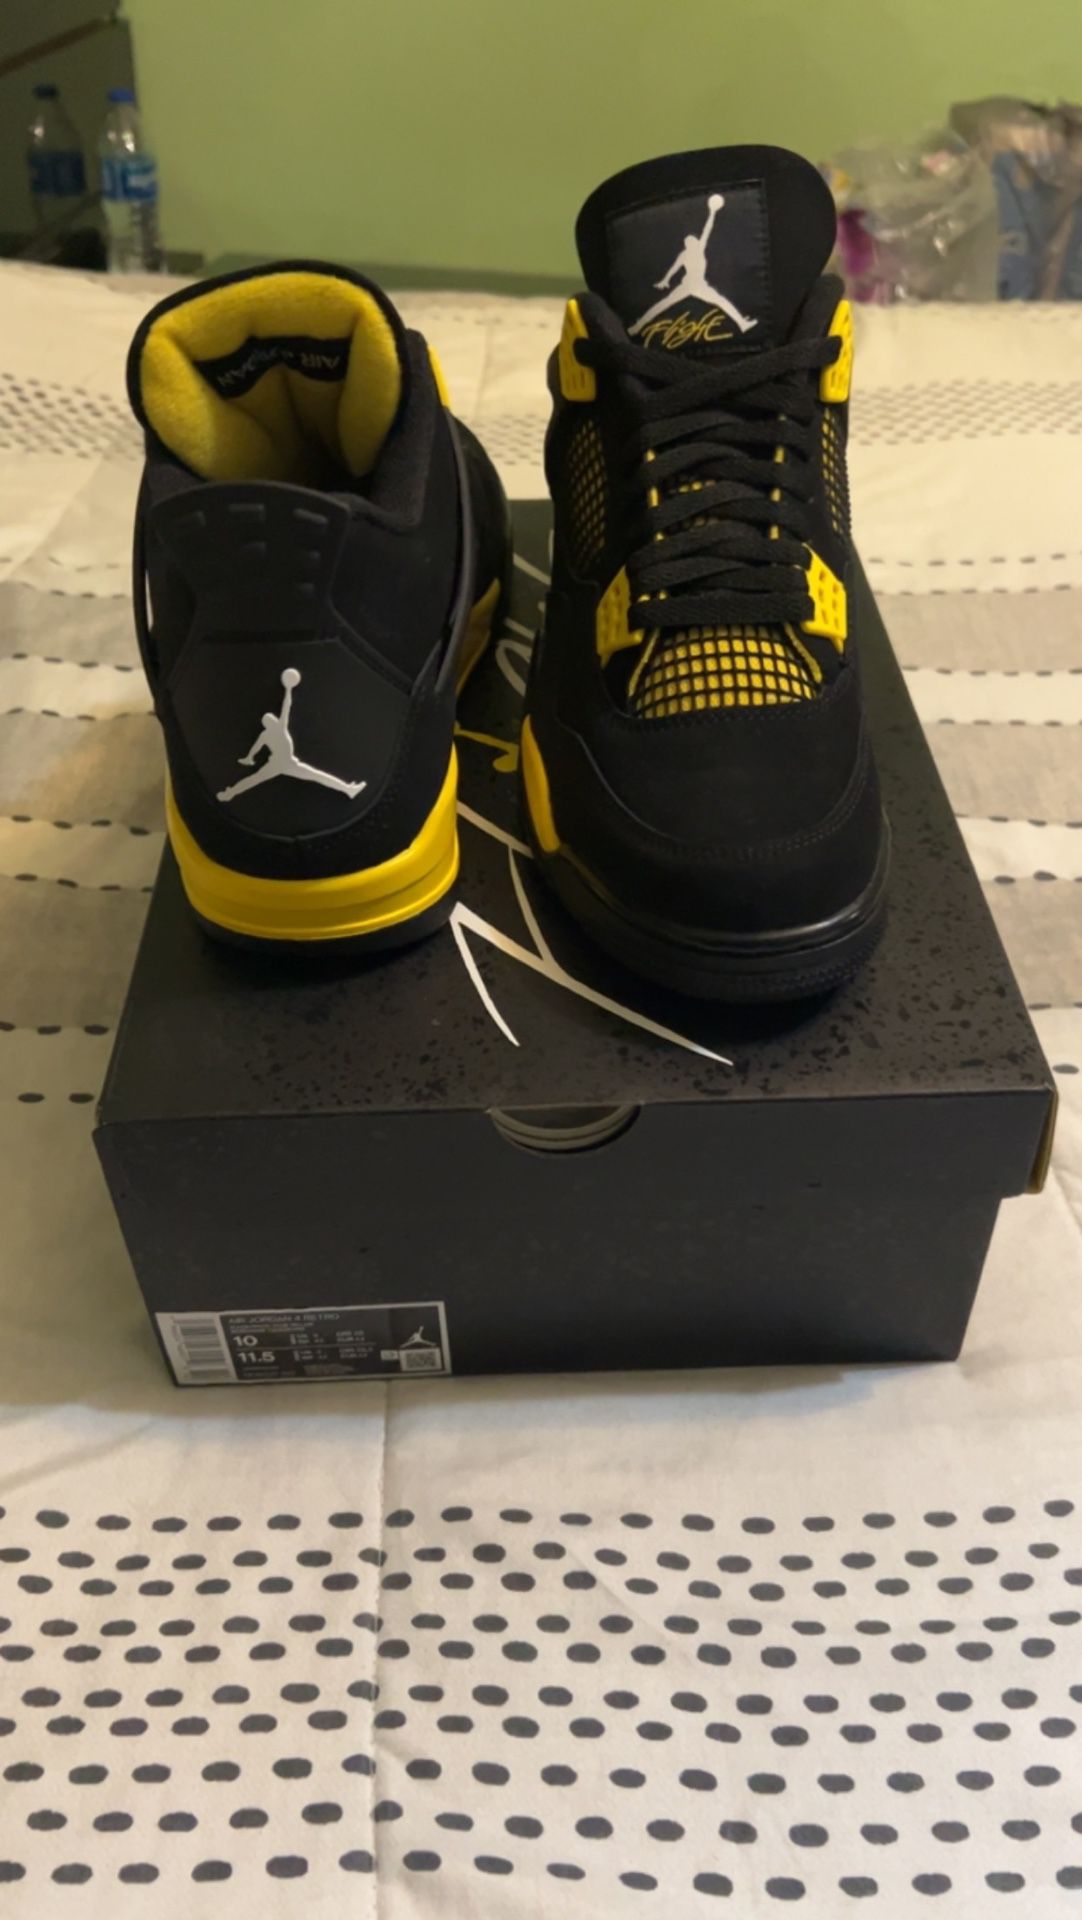 Jordan 4 Thunders (yellow)